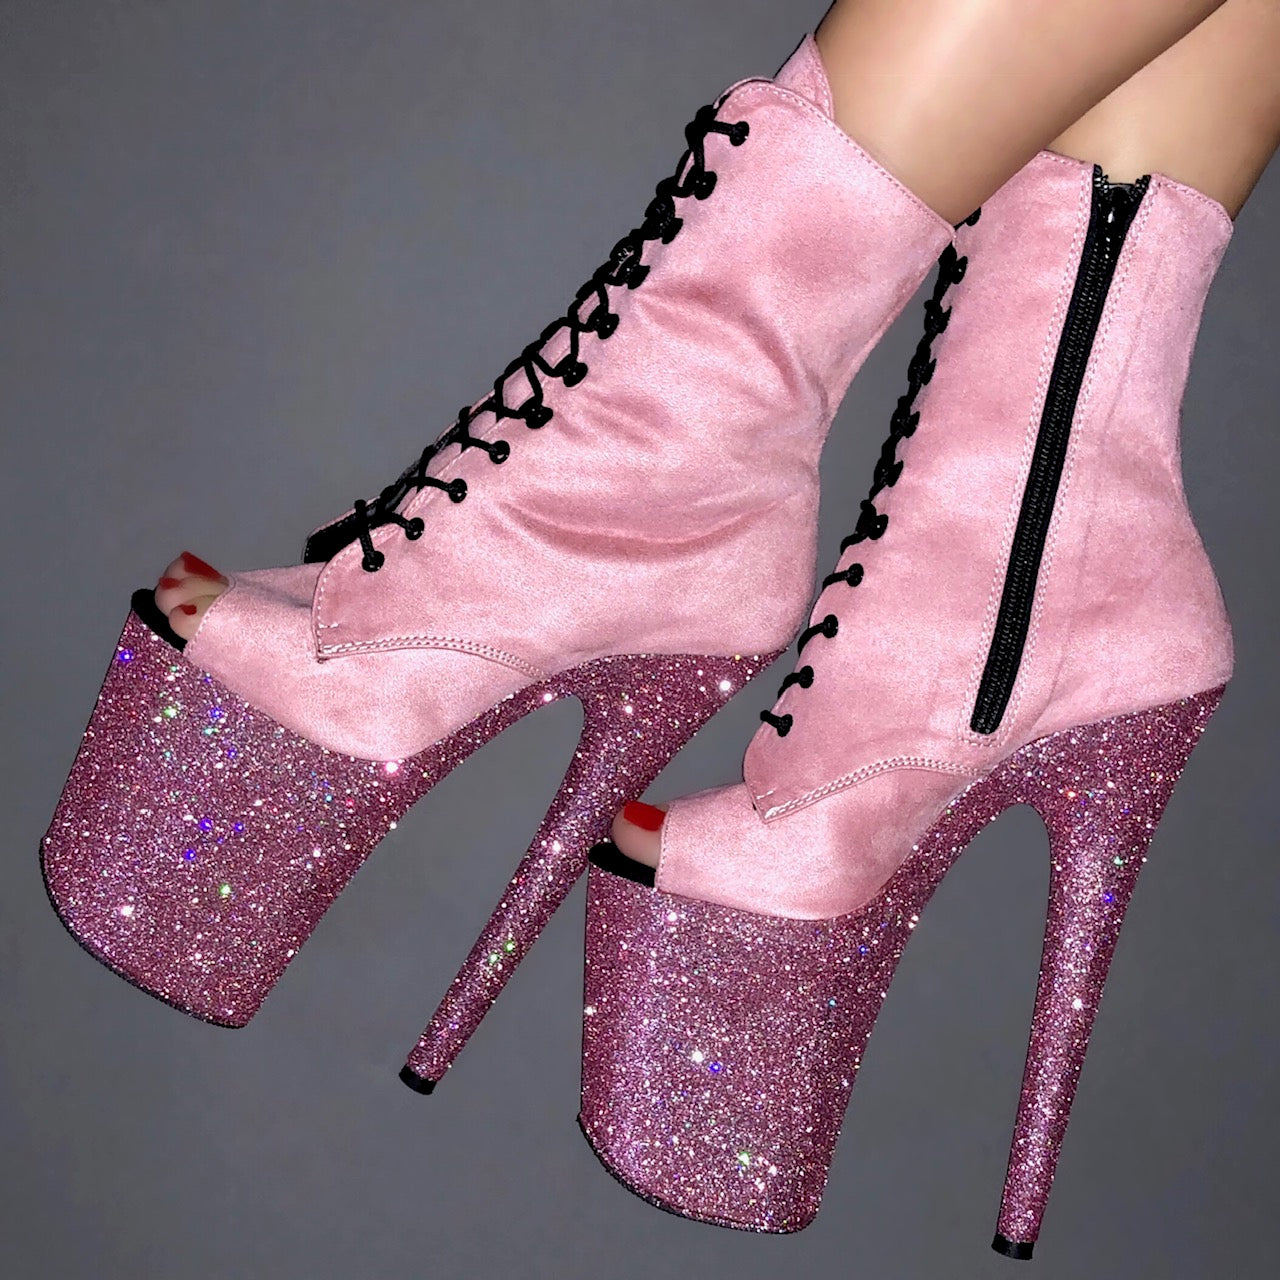 pink boot heels